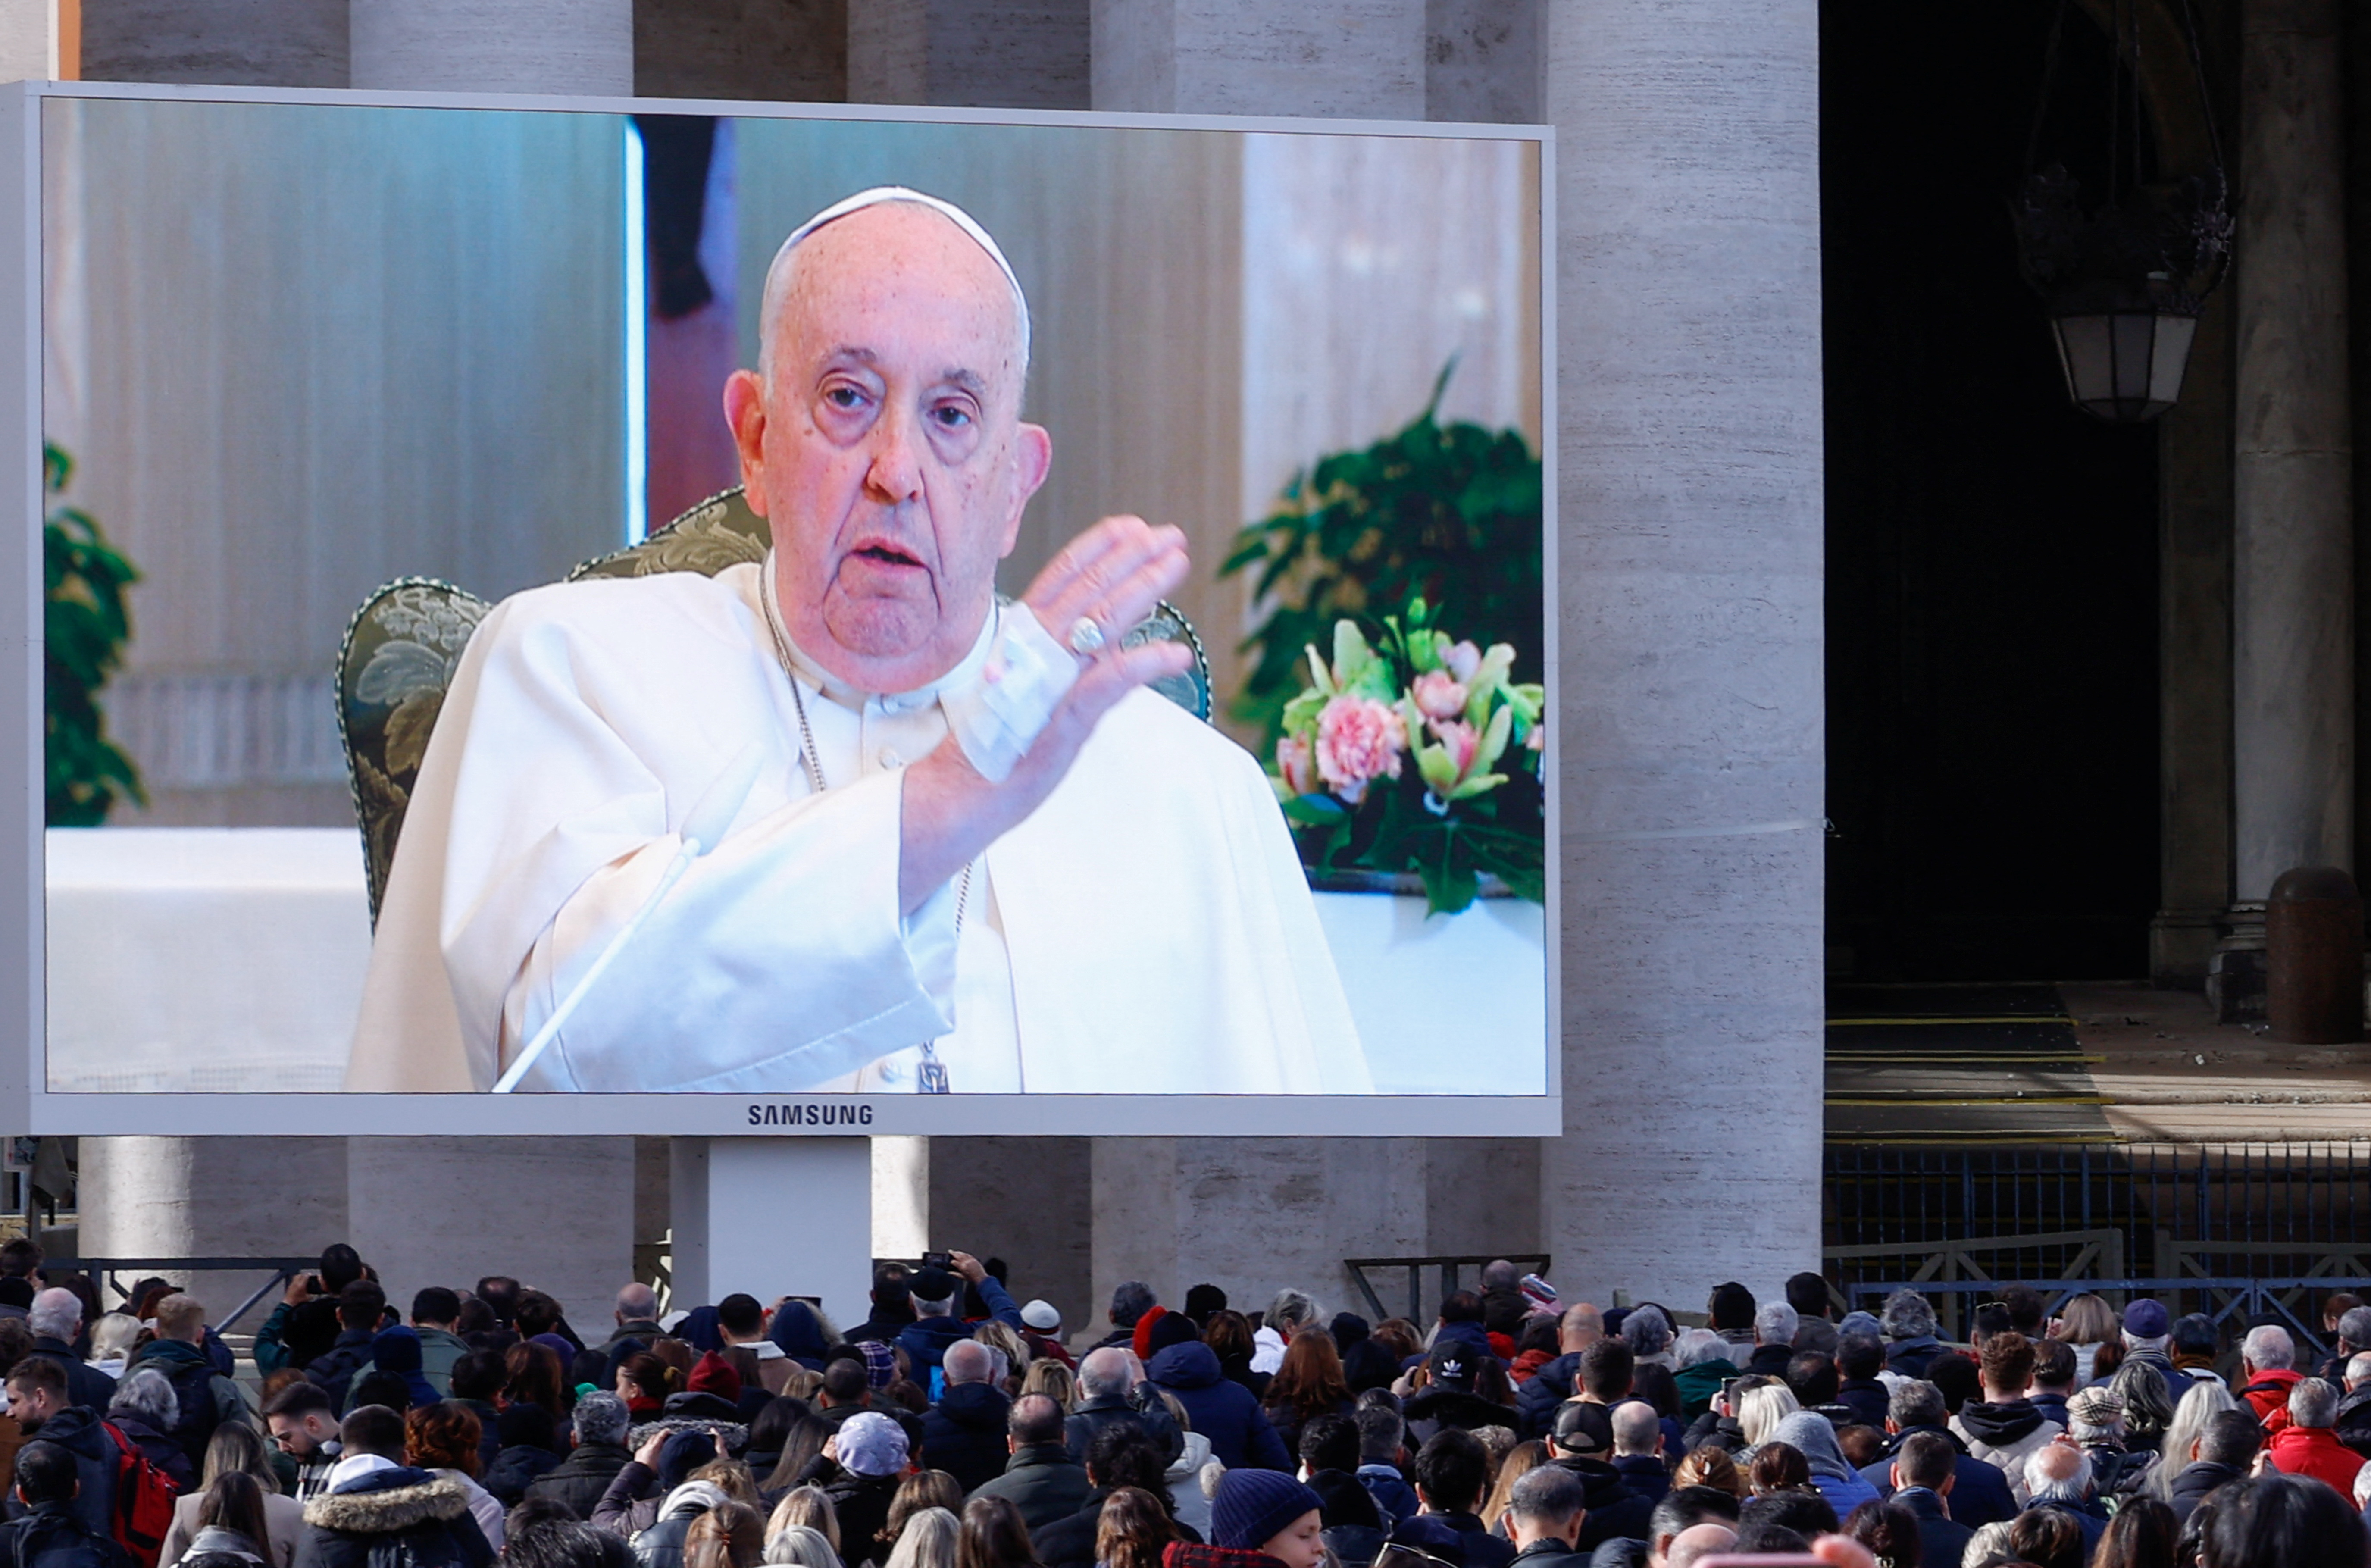 El papa Francisco reveló que tiene una “inflamación pulmonar” y no se asomó a la Plaza San Pedro para el Ángelus